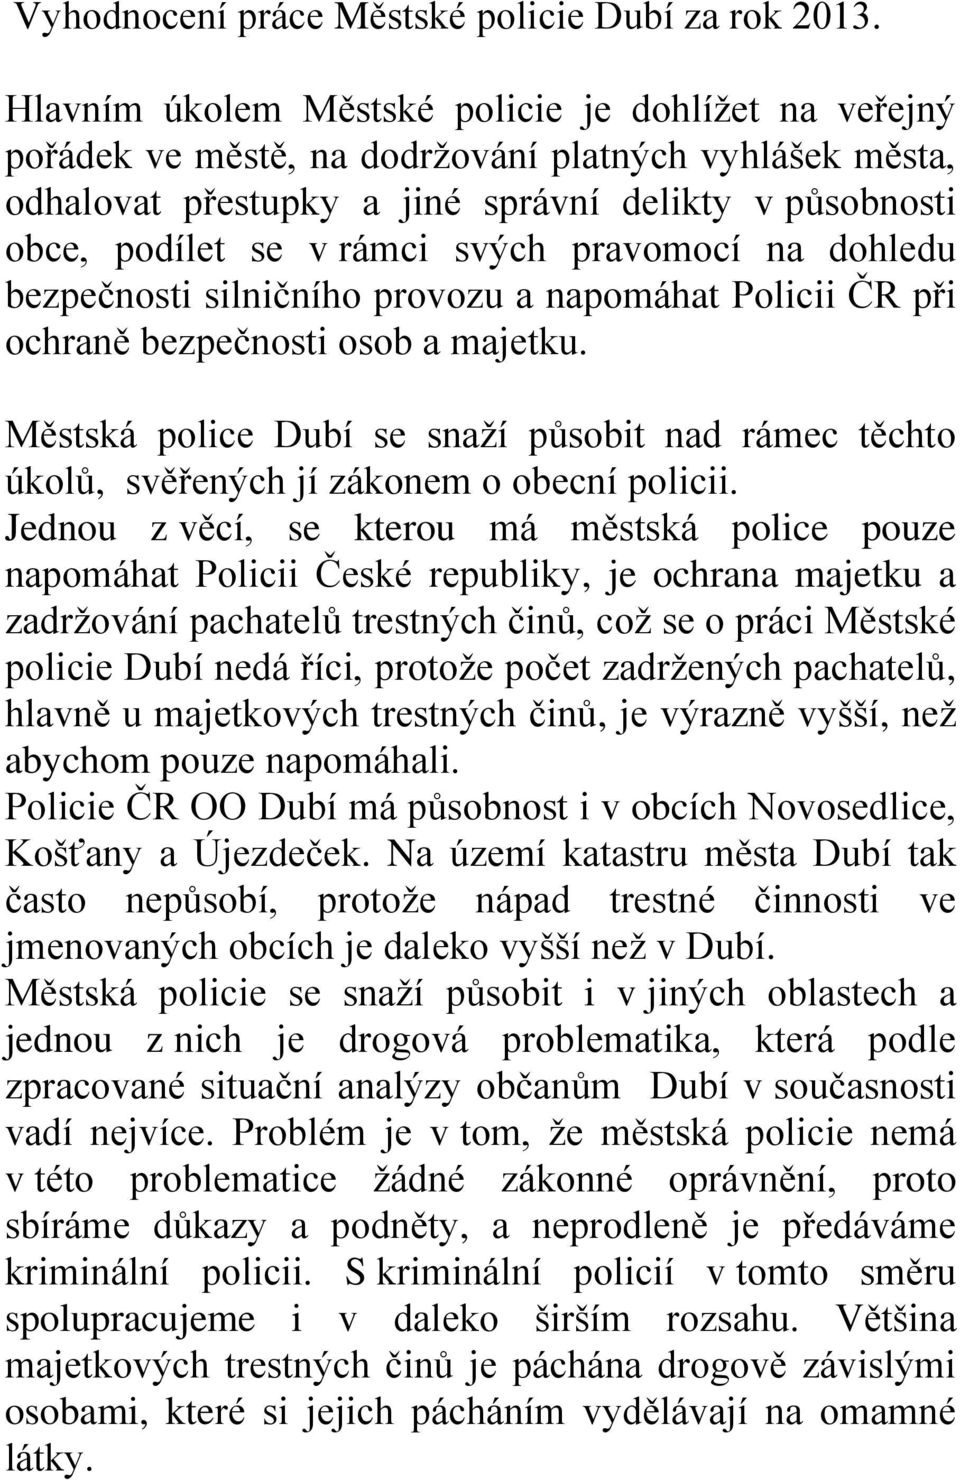 pravomocí na dohledu bezpečnosti silničního provozu a napomáhat Policii ČR při ochraně bezpečnosti osob a majetku.